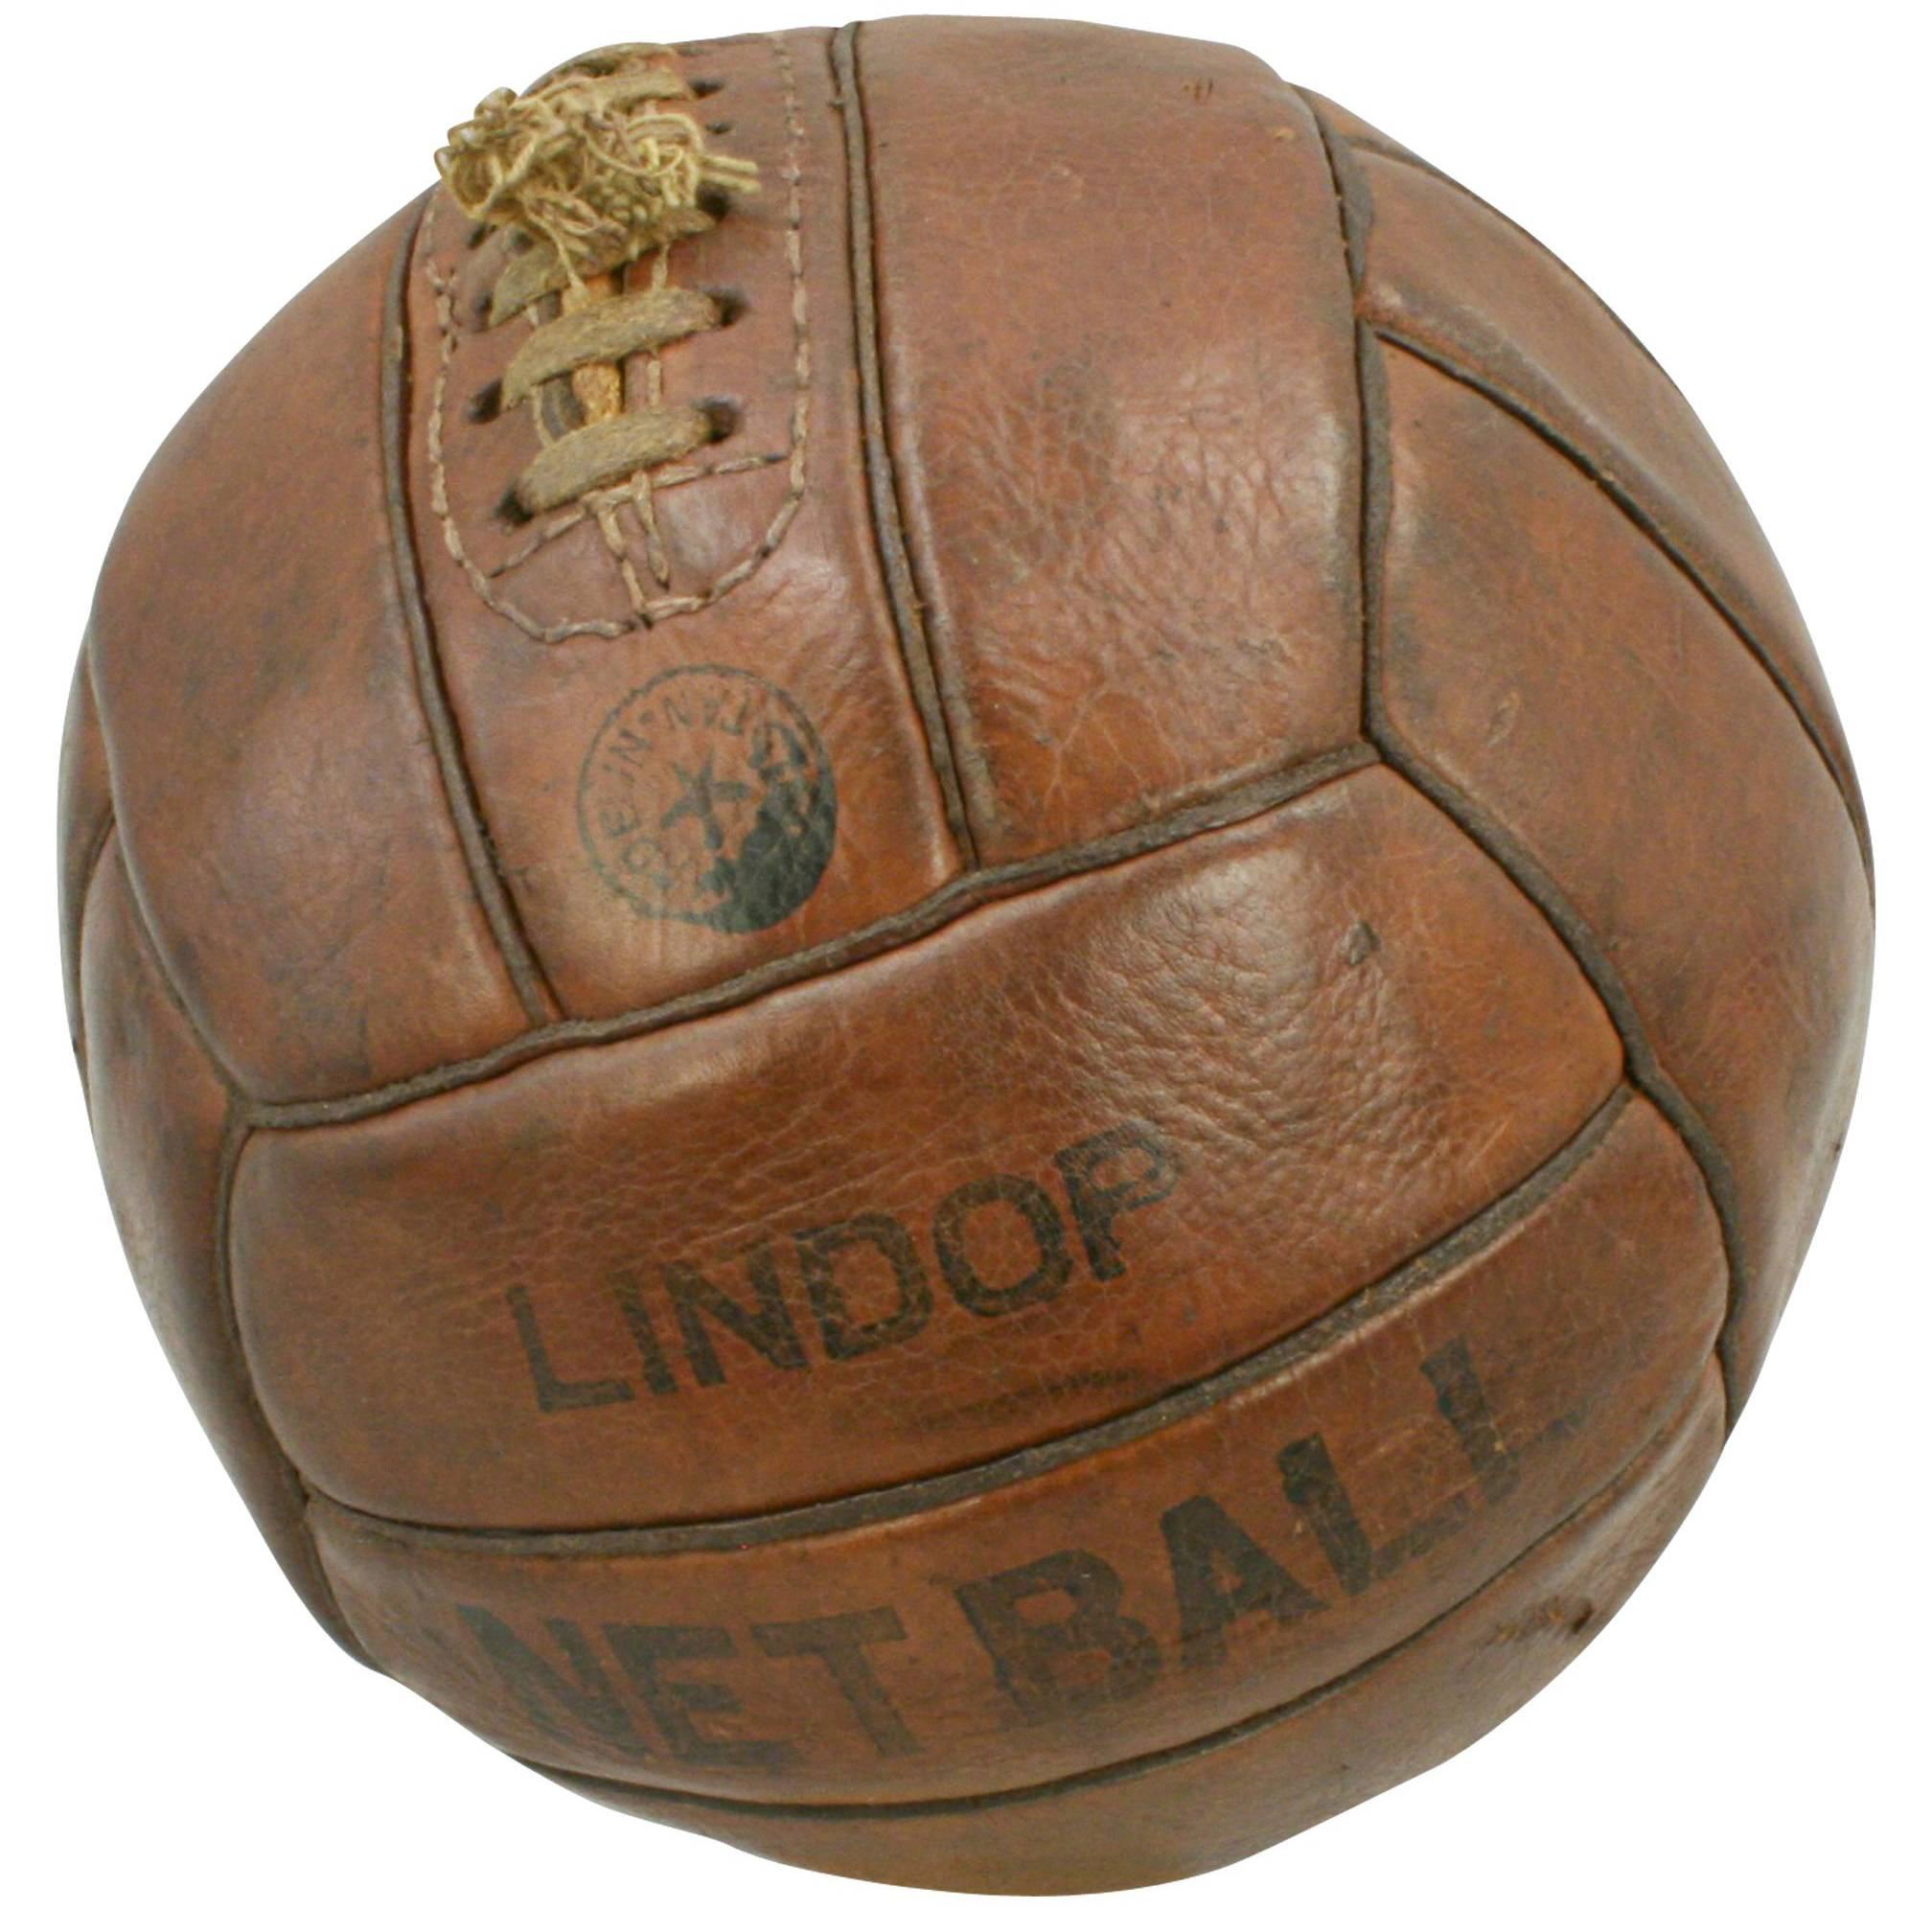 Leather Lindop Netball